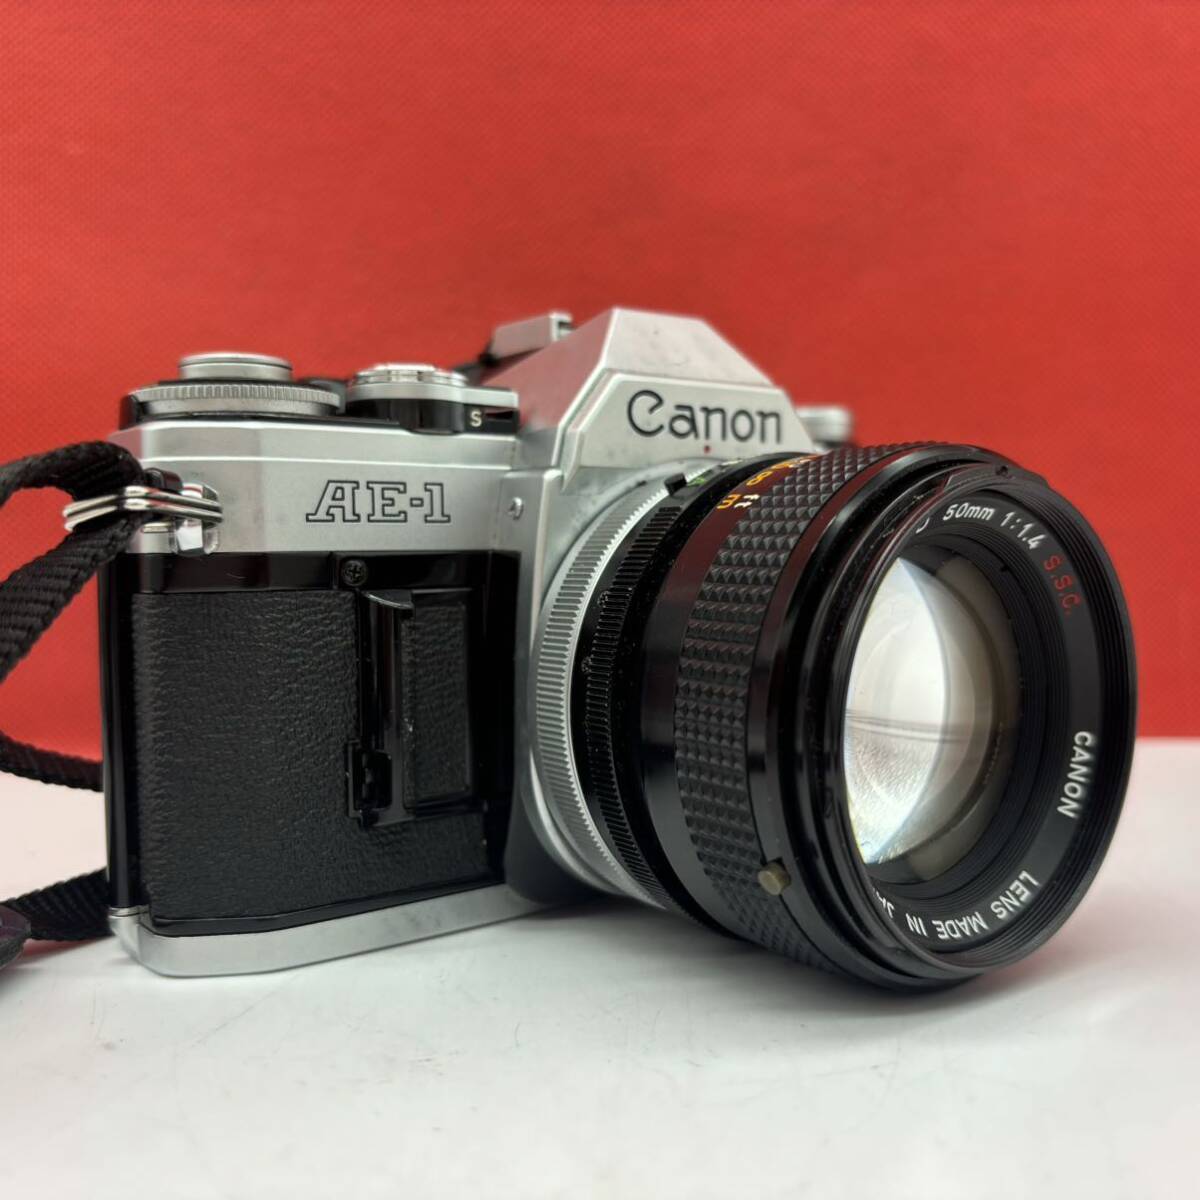 ◆ Canon AE-1 フィルムカメラ 一眼レフカメラ ボディ FD 50mm F1.4 S.S.C. レンズ シャッター、露出計OK キャノン_画像4